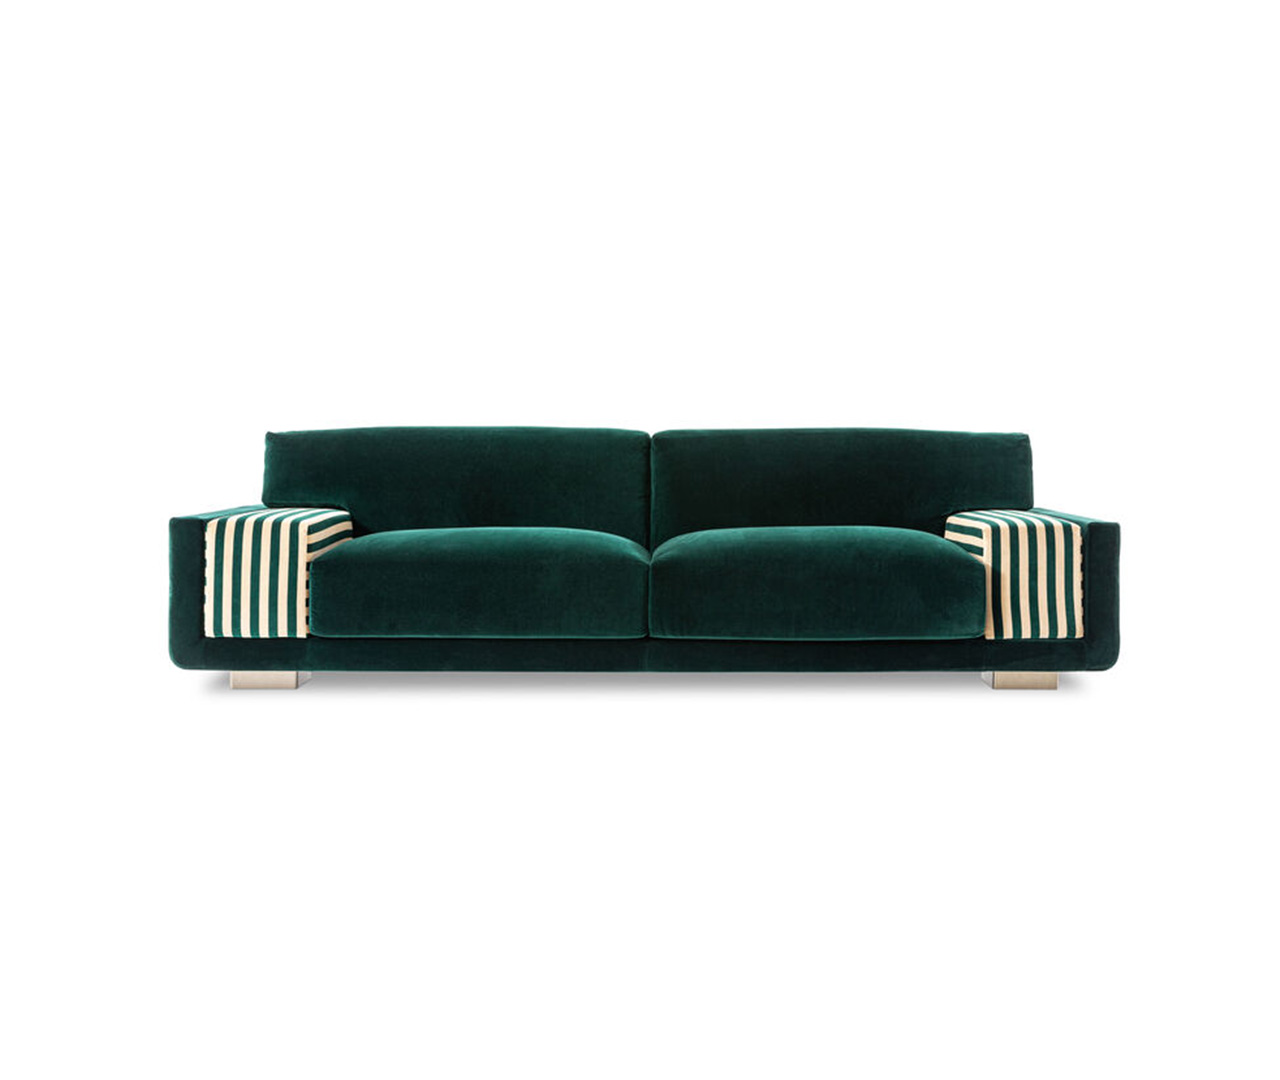 Wide Patterned Armrest Sofa